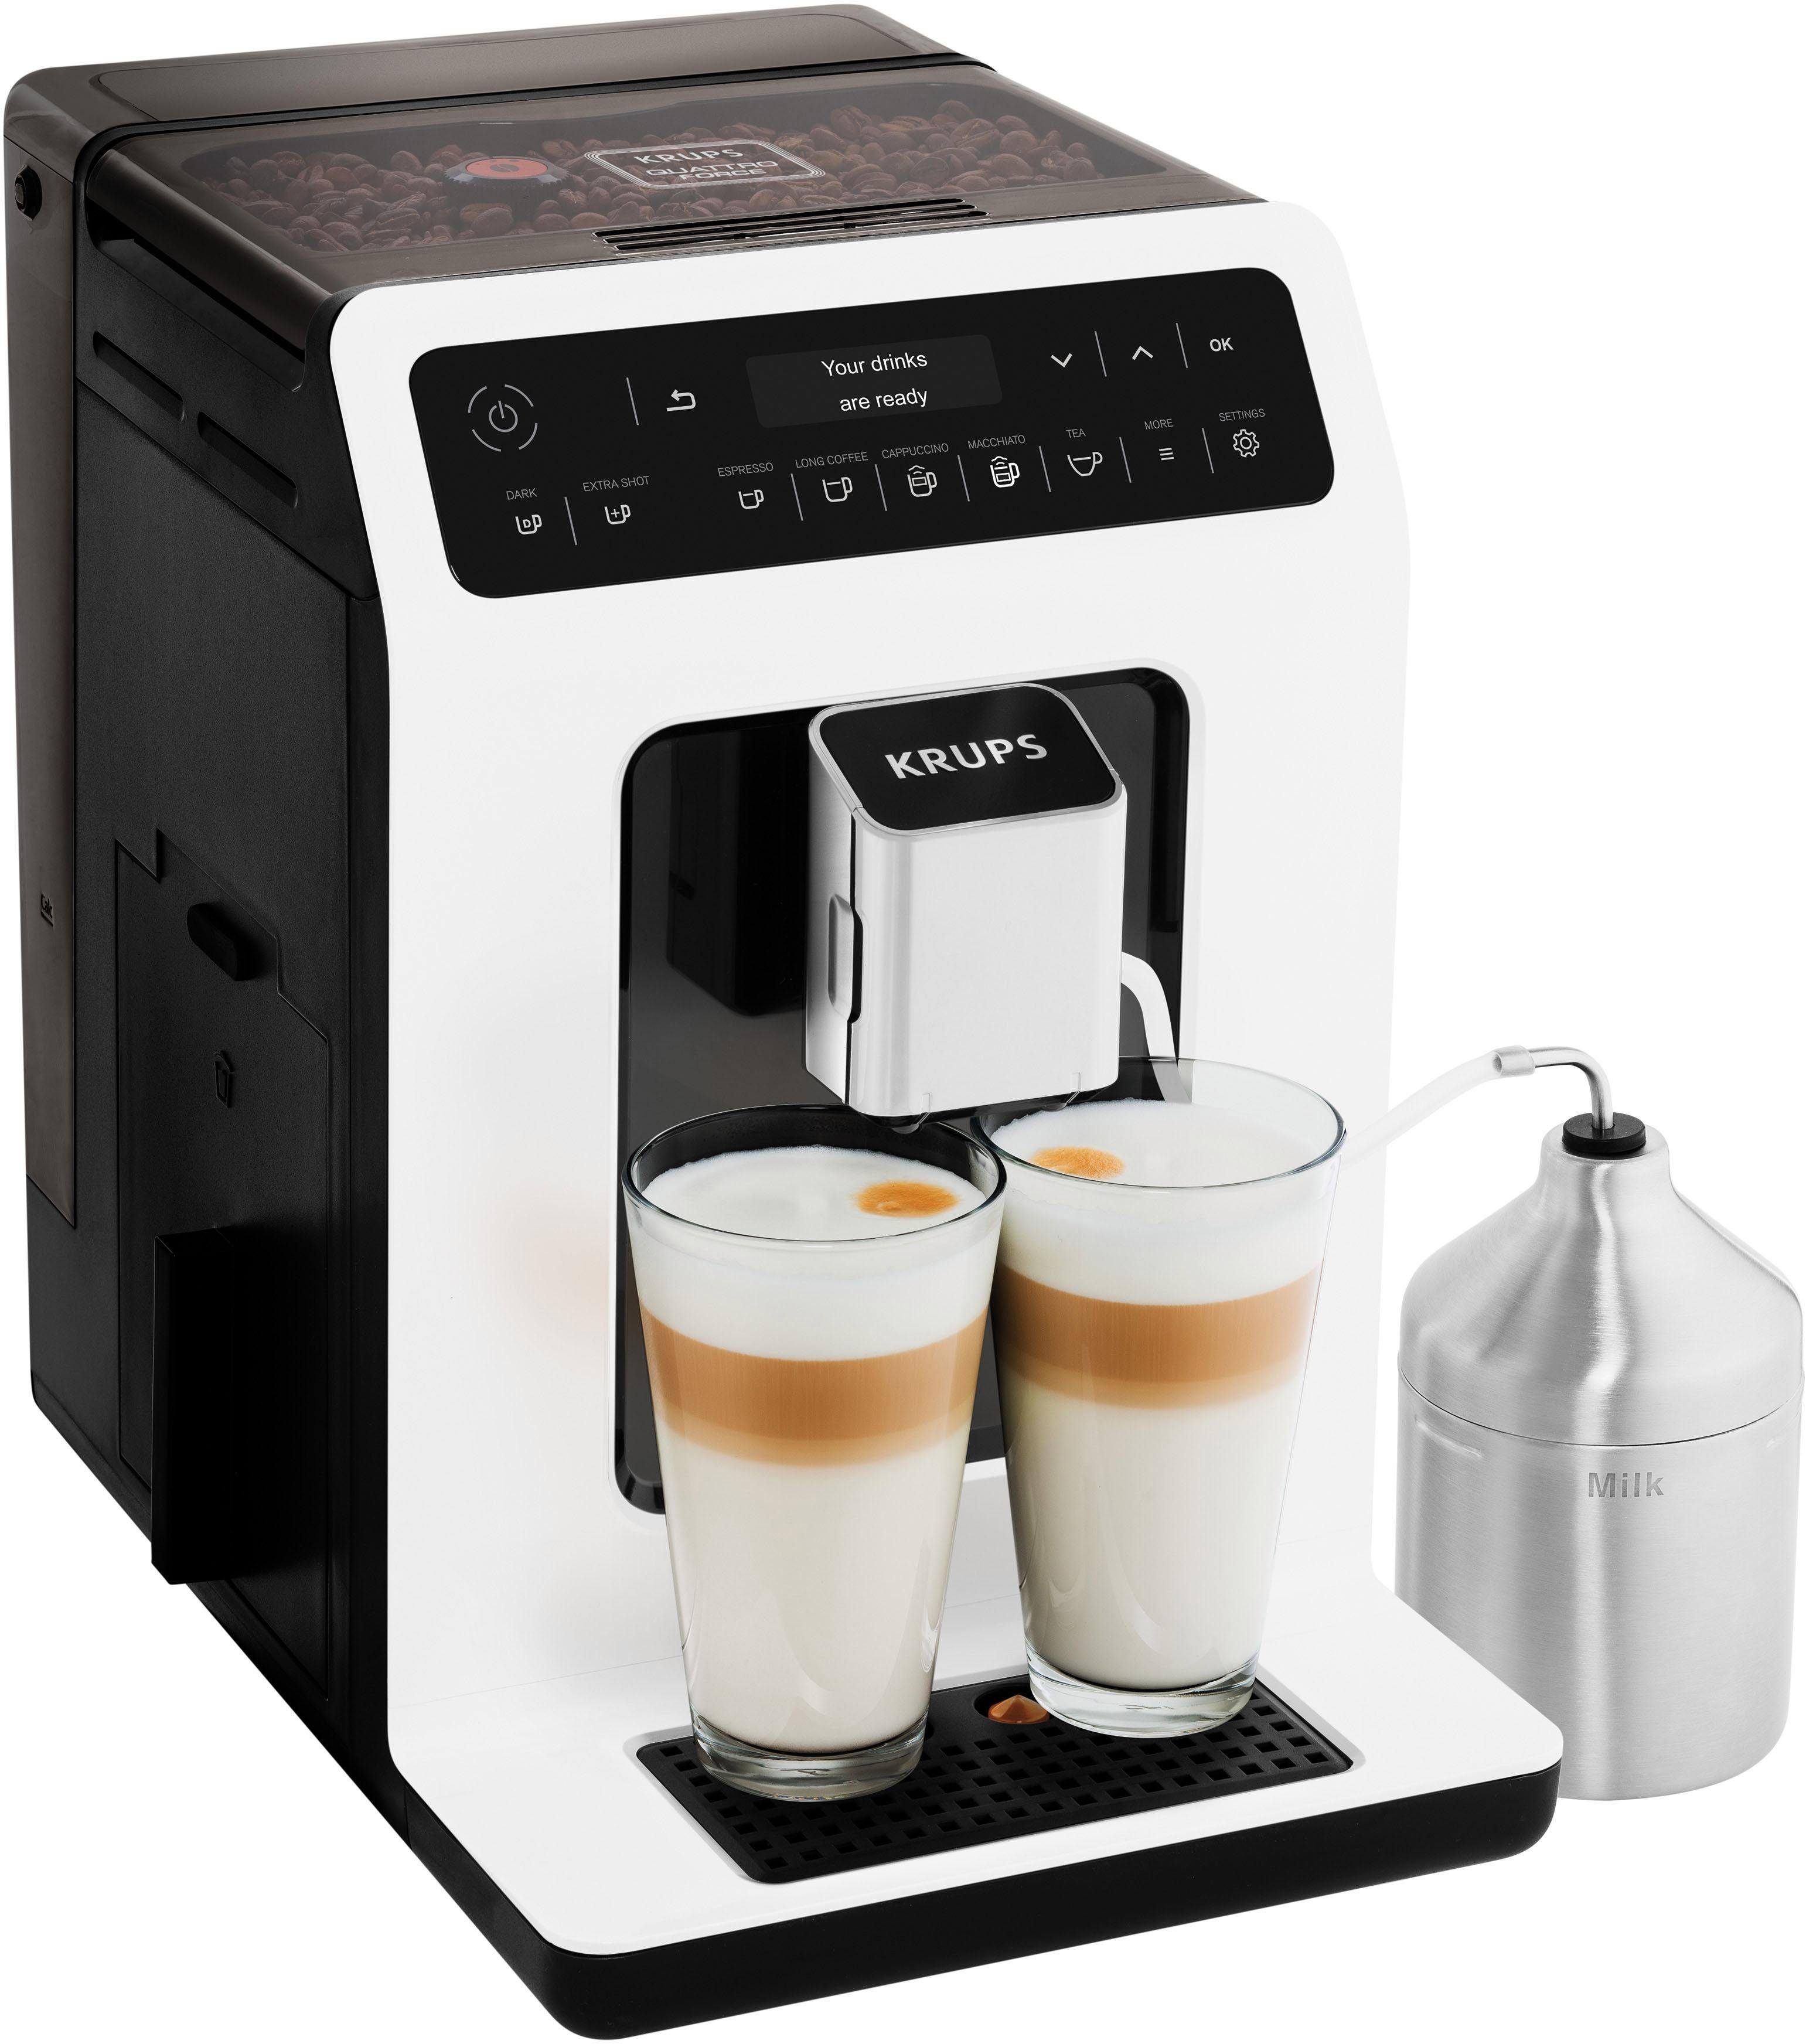 Krups Kaffeevollautomat EA8911 Evidence, inkl. Milchbehälter online kaufen  | OTTO